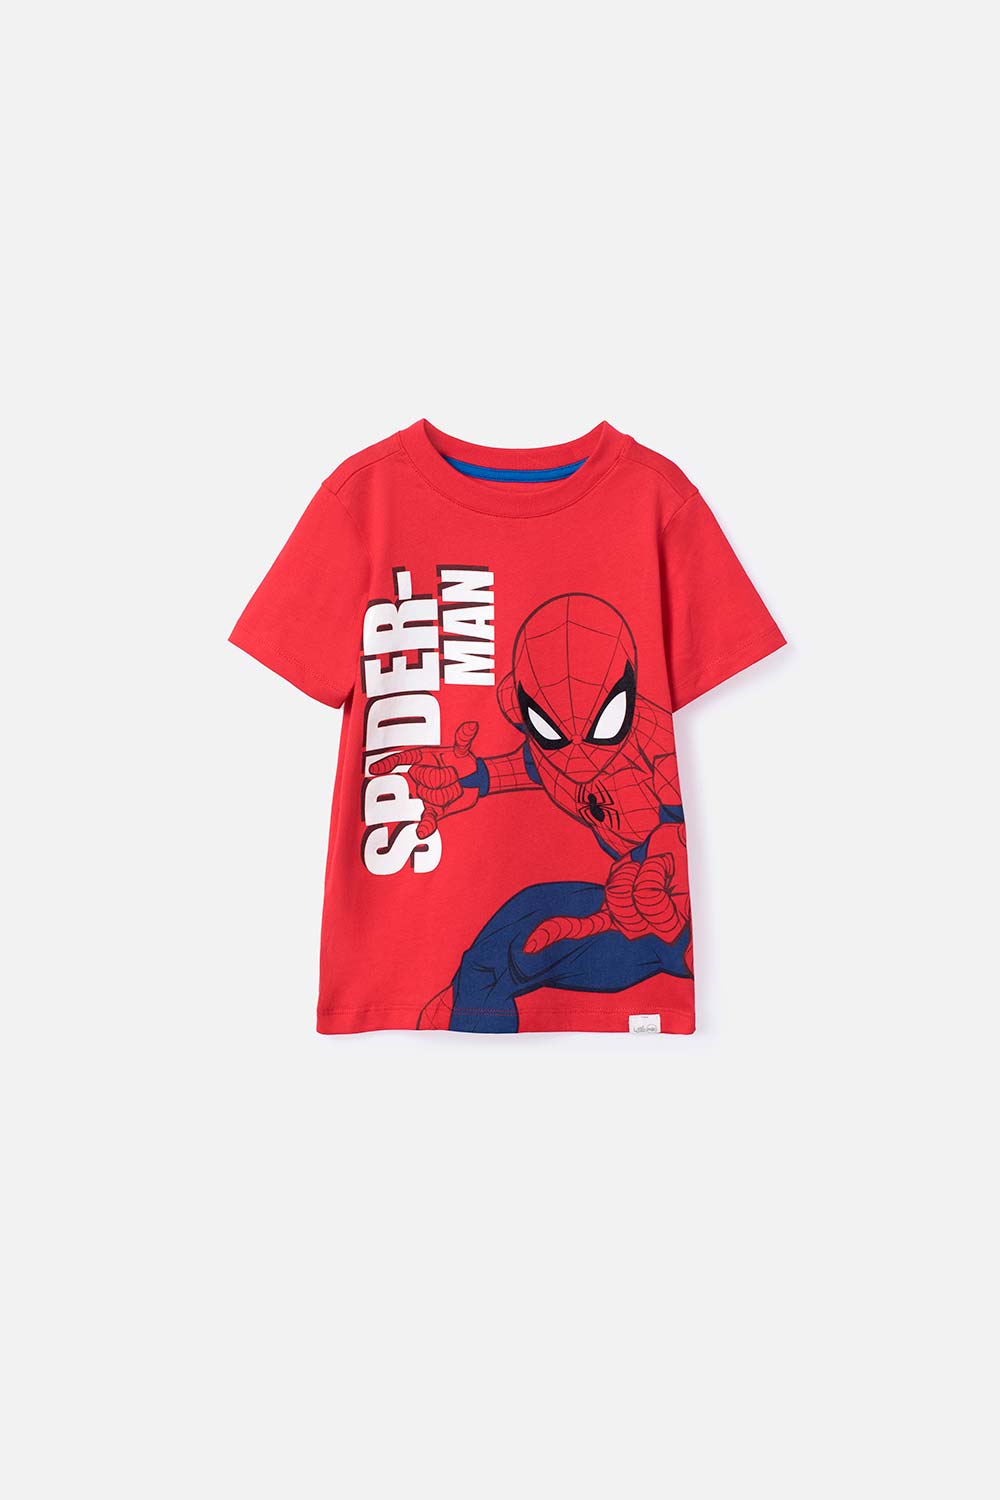 Camiseta niños Spiderman con Nombre